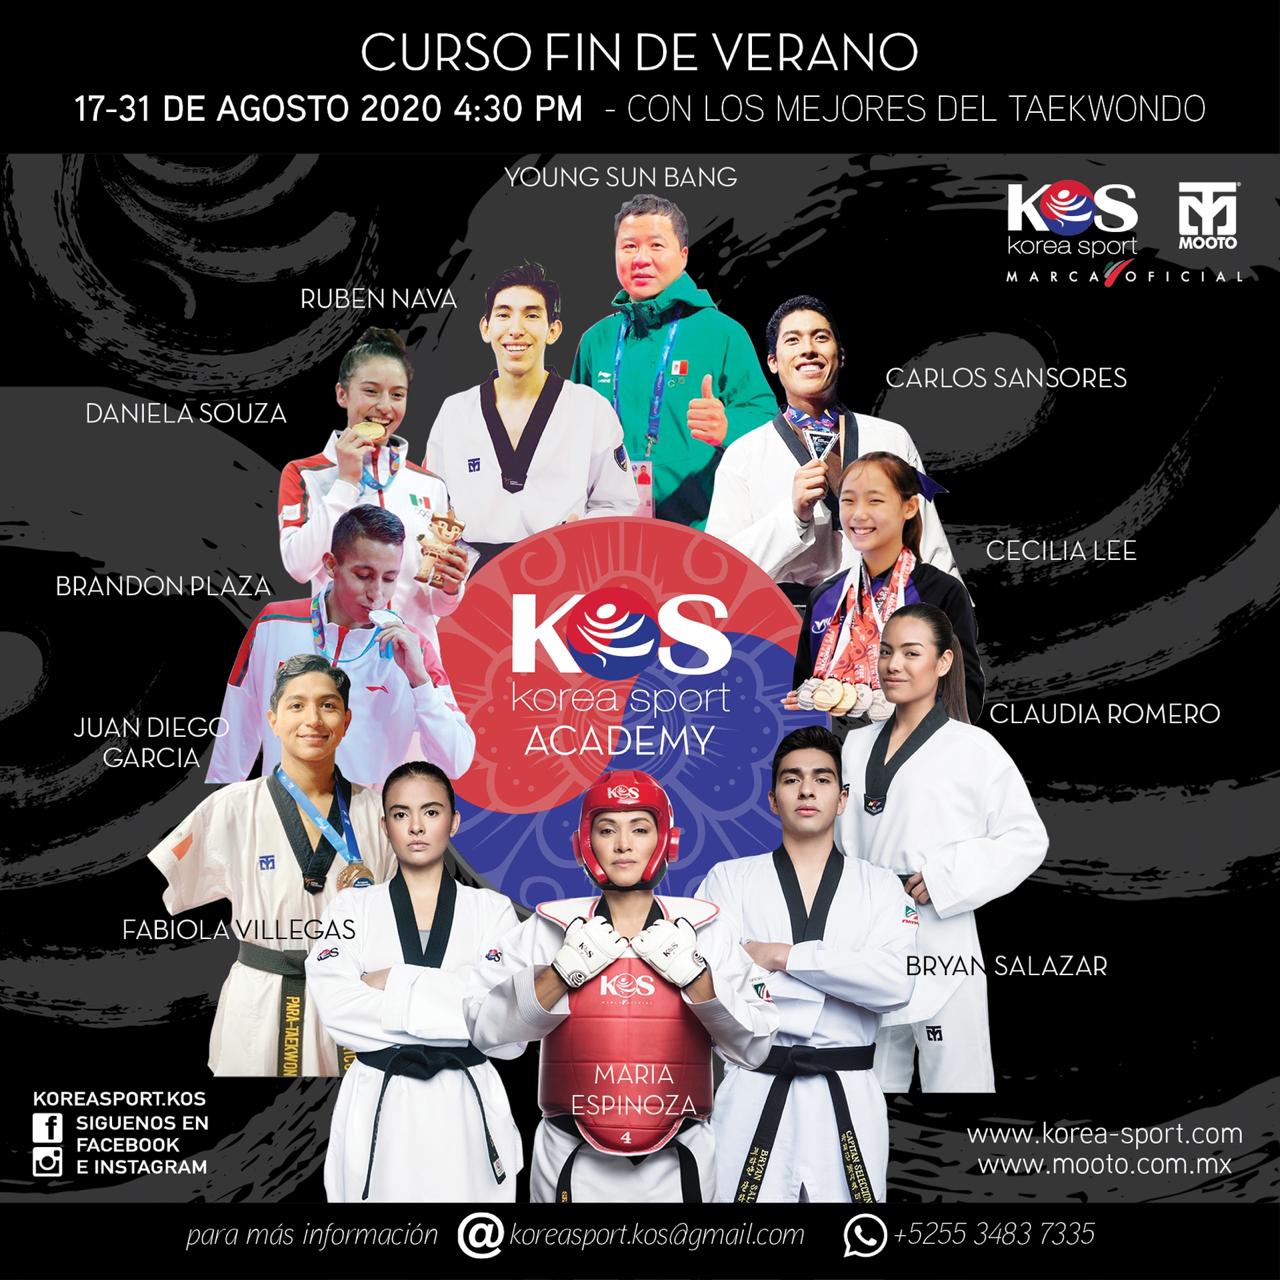 Curso Fin de Verano “Taekwondo KOS-MOOTO 2020”